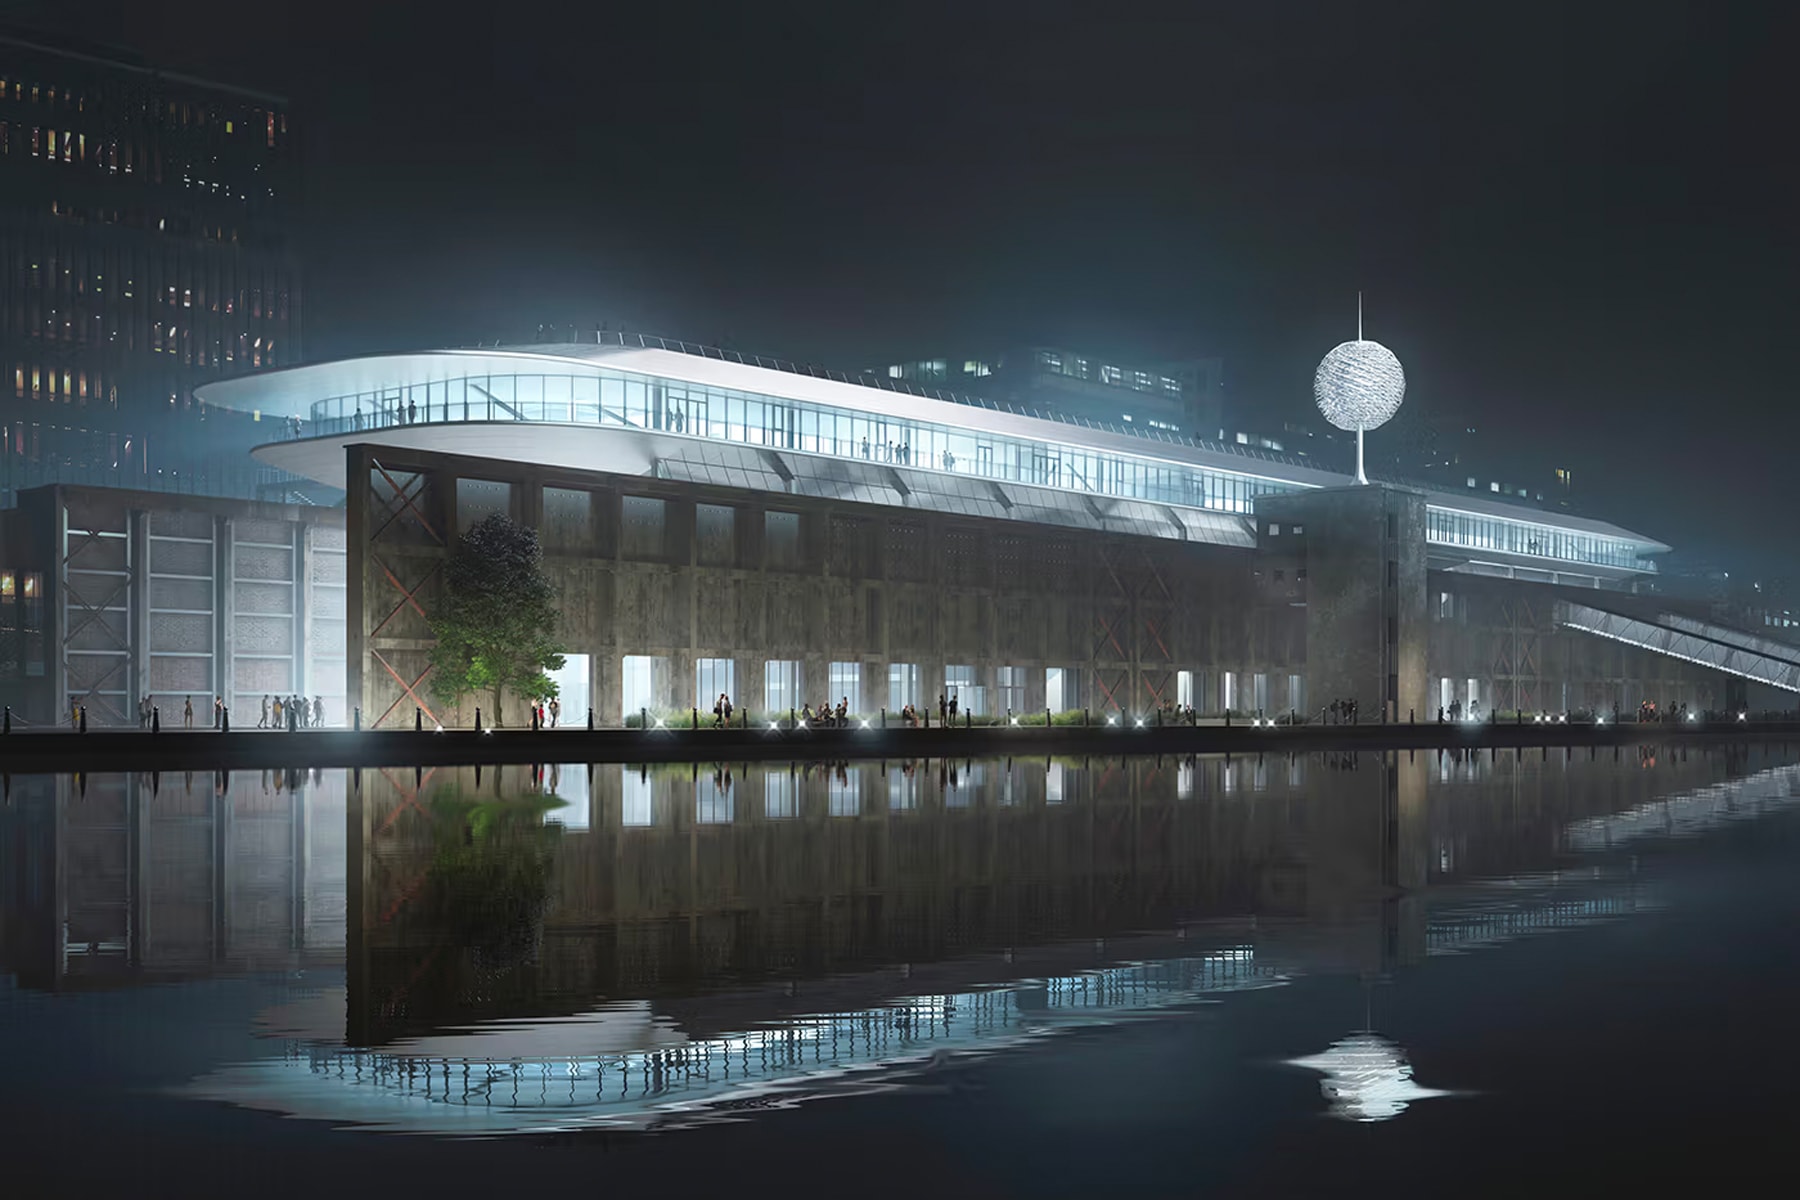 北京建筑事务所 MAD 设想于工厂顶部建造未来风格漂浮方舟